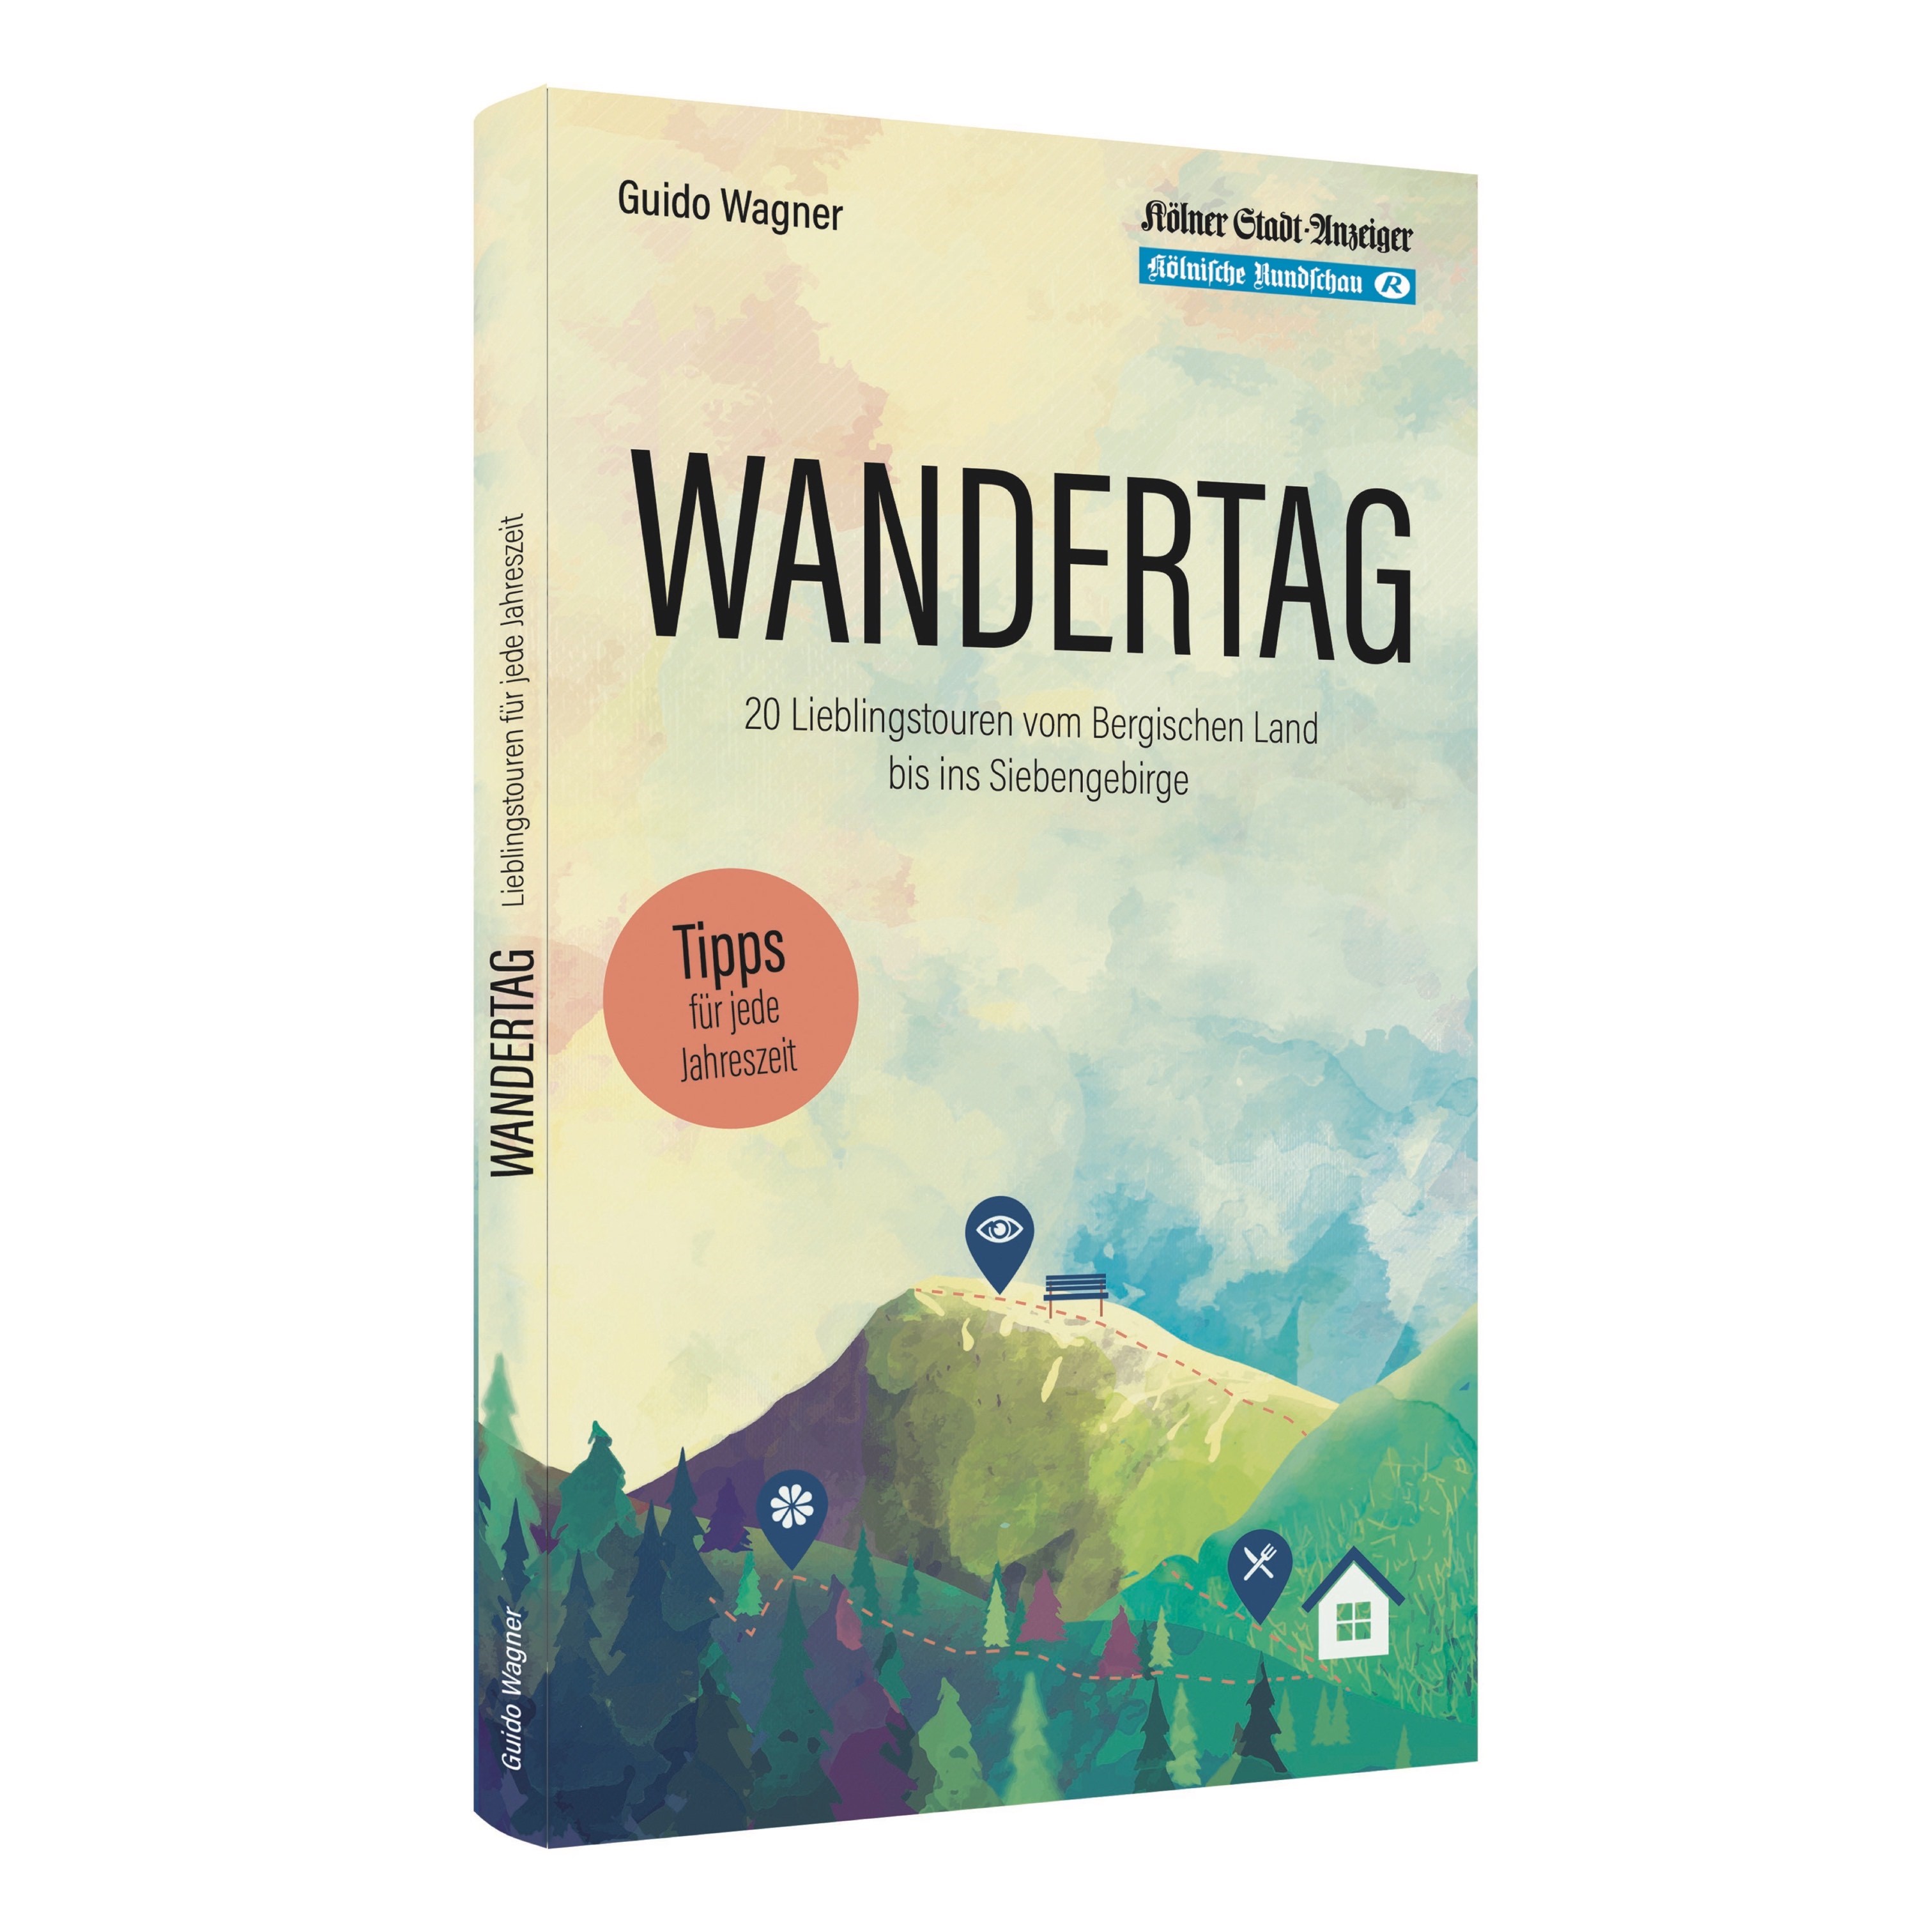 Buch Wandertag Tipps Fur Jede Jahreszeit Von Guido Wagner Bucher Die Man Haben Muss Literatur Rund Um Koln